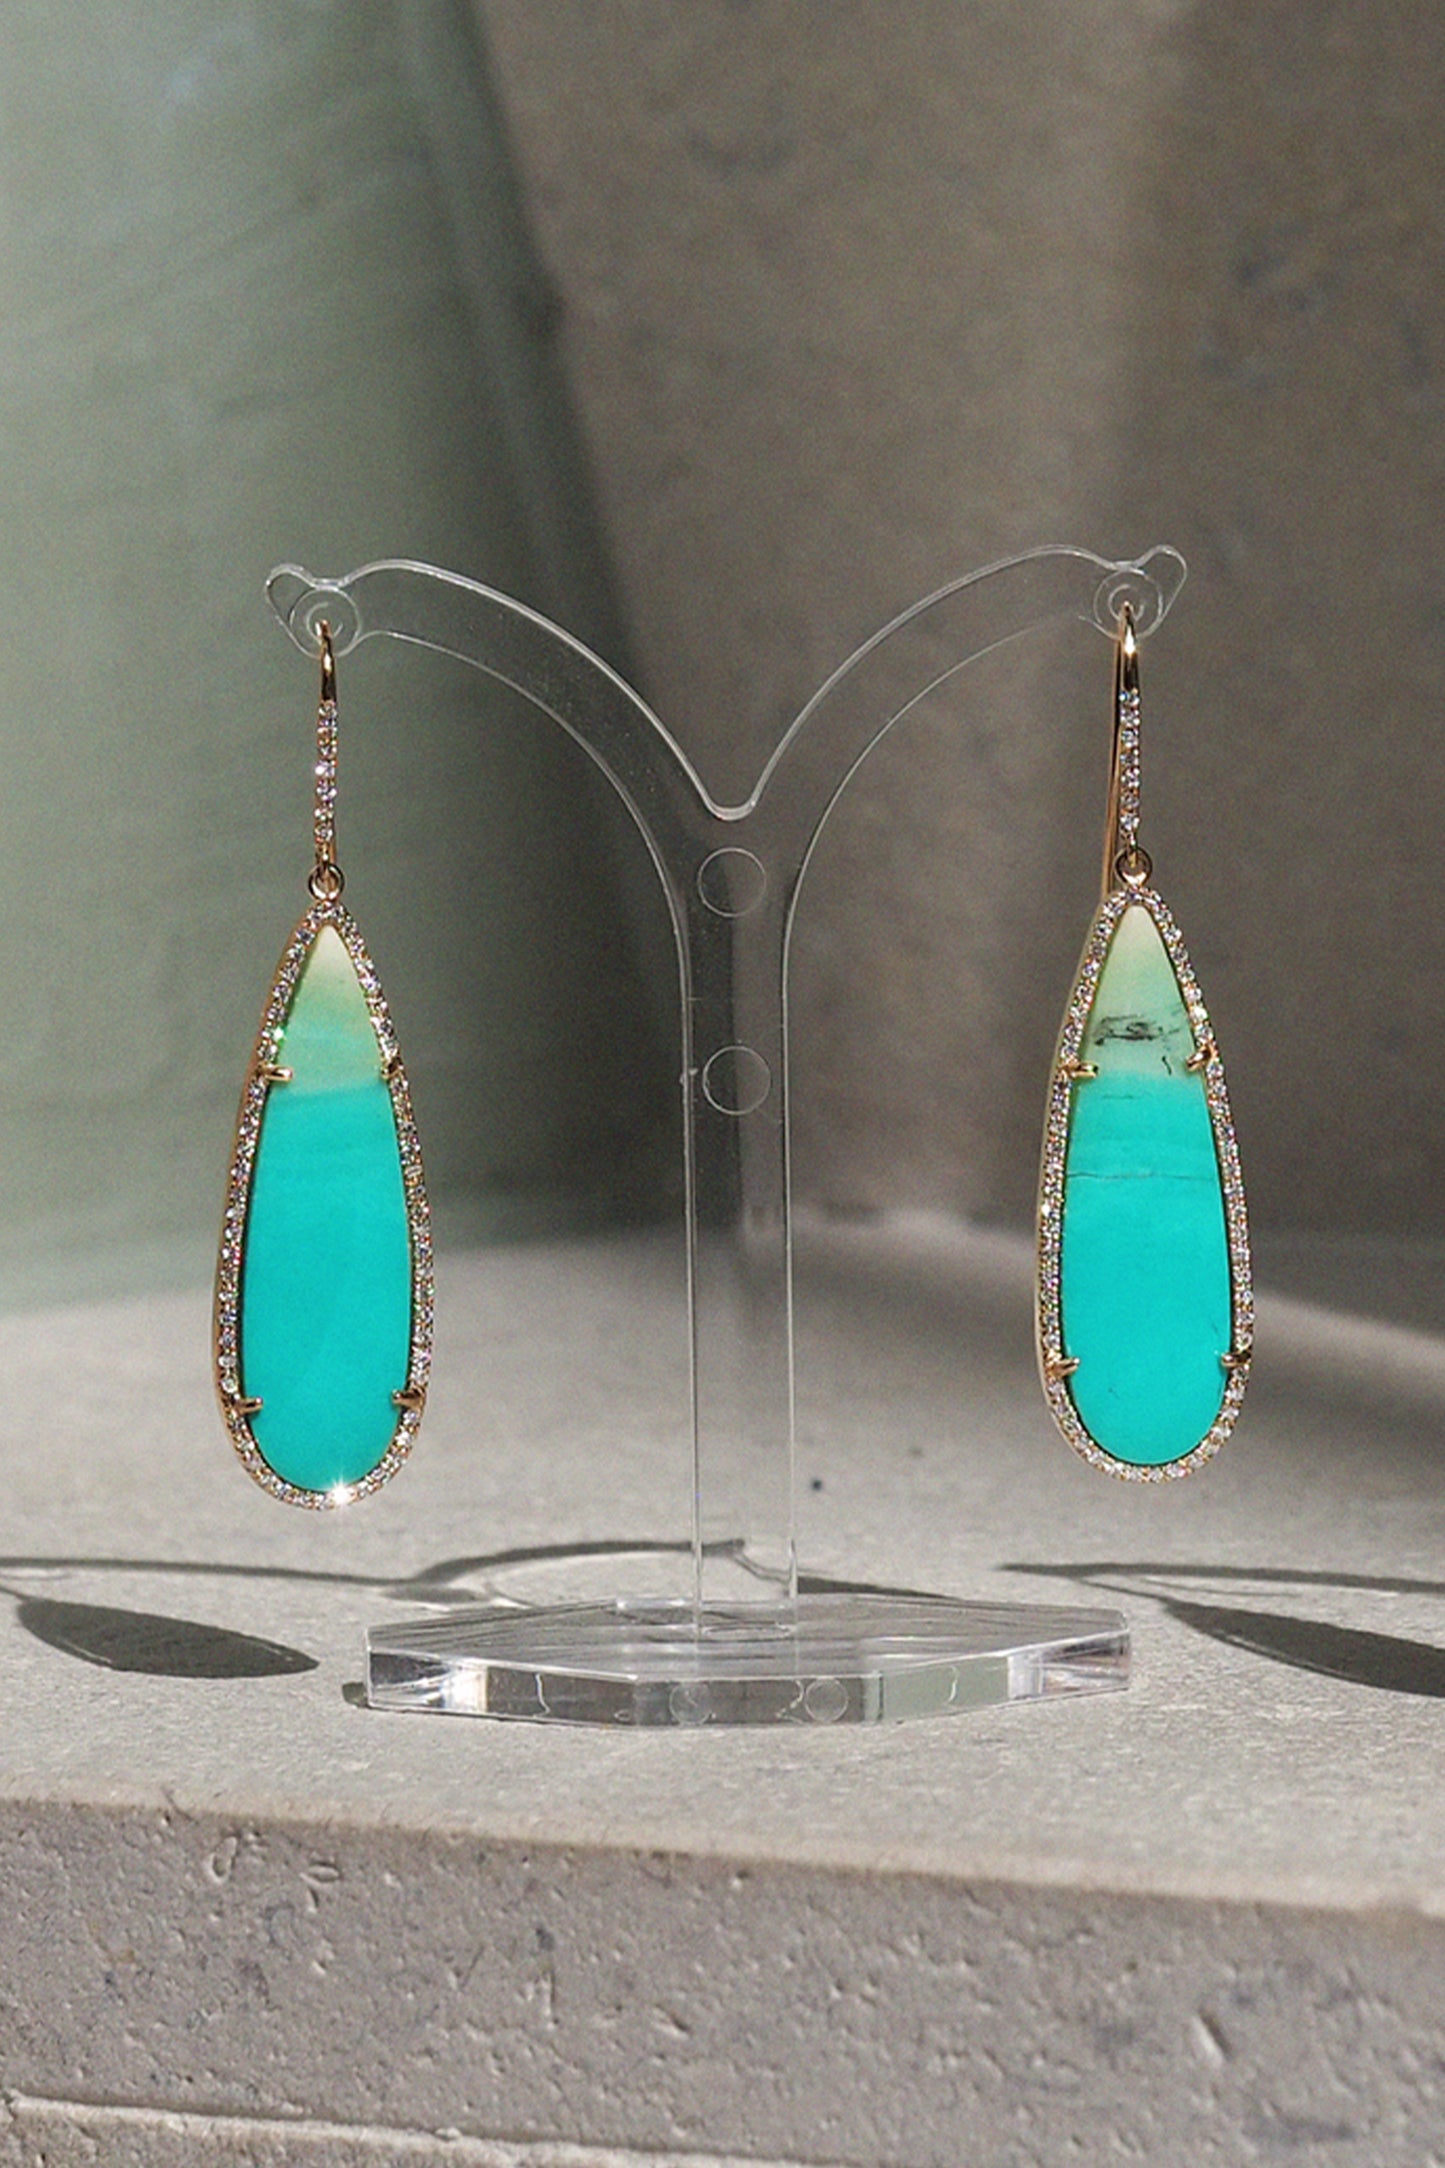 Lagoon earrings, turquoise